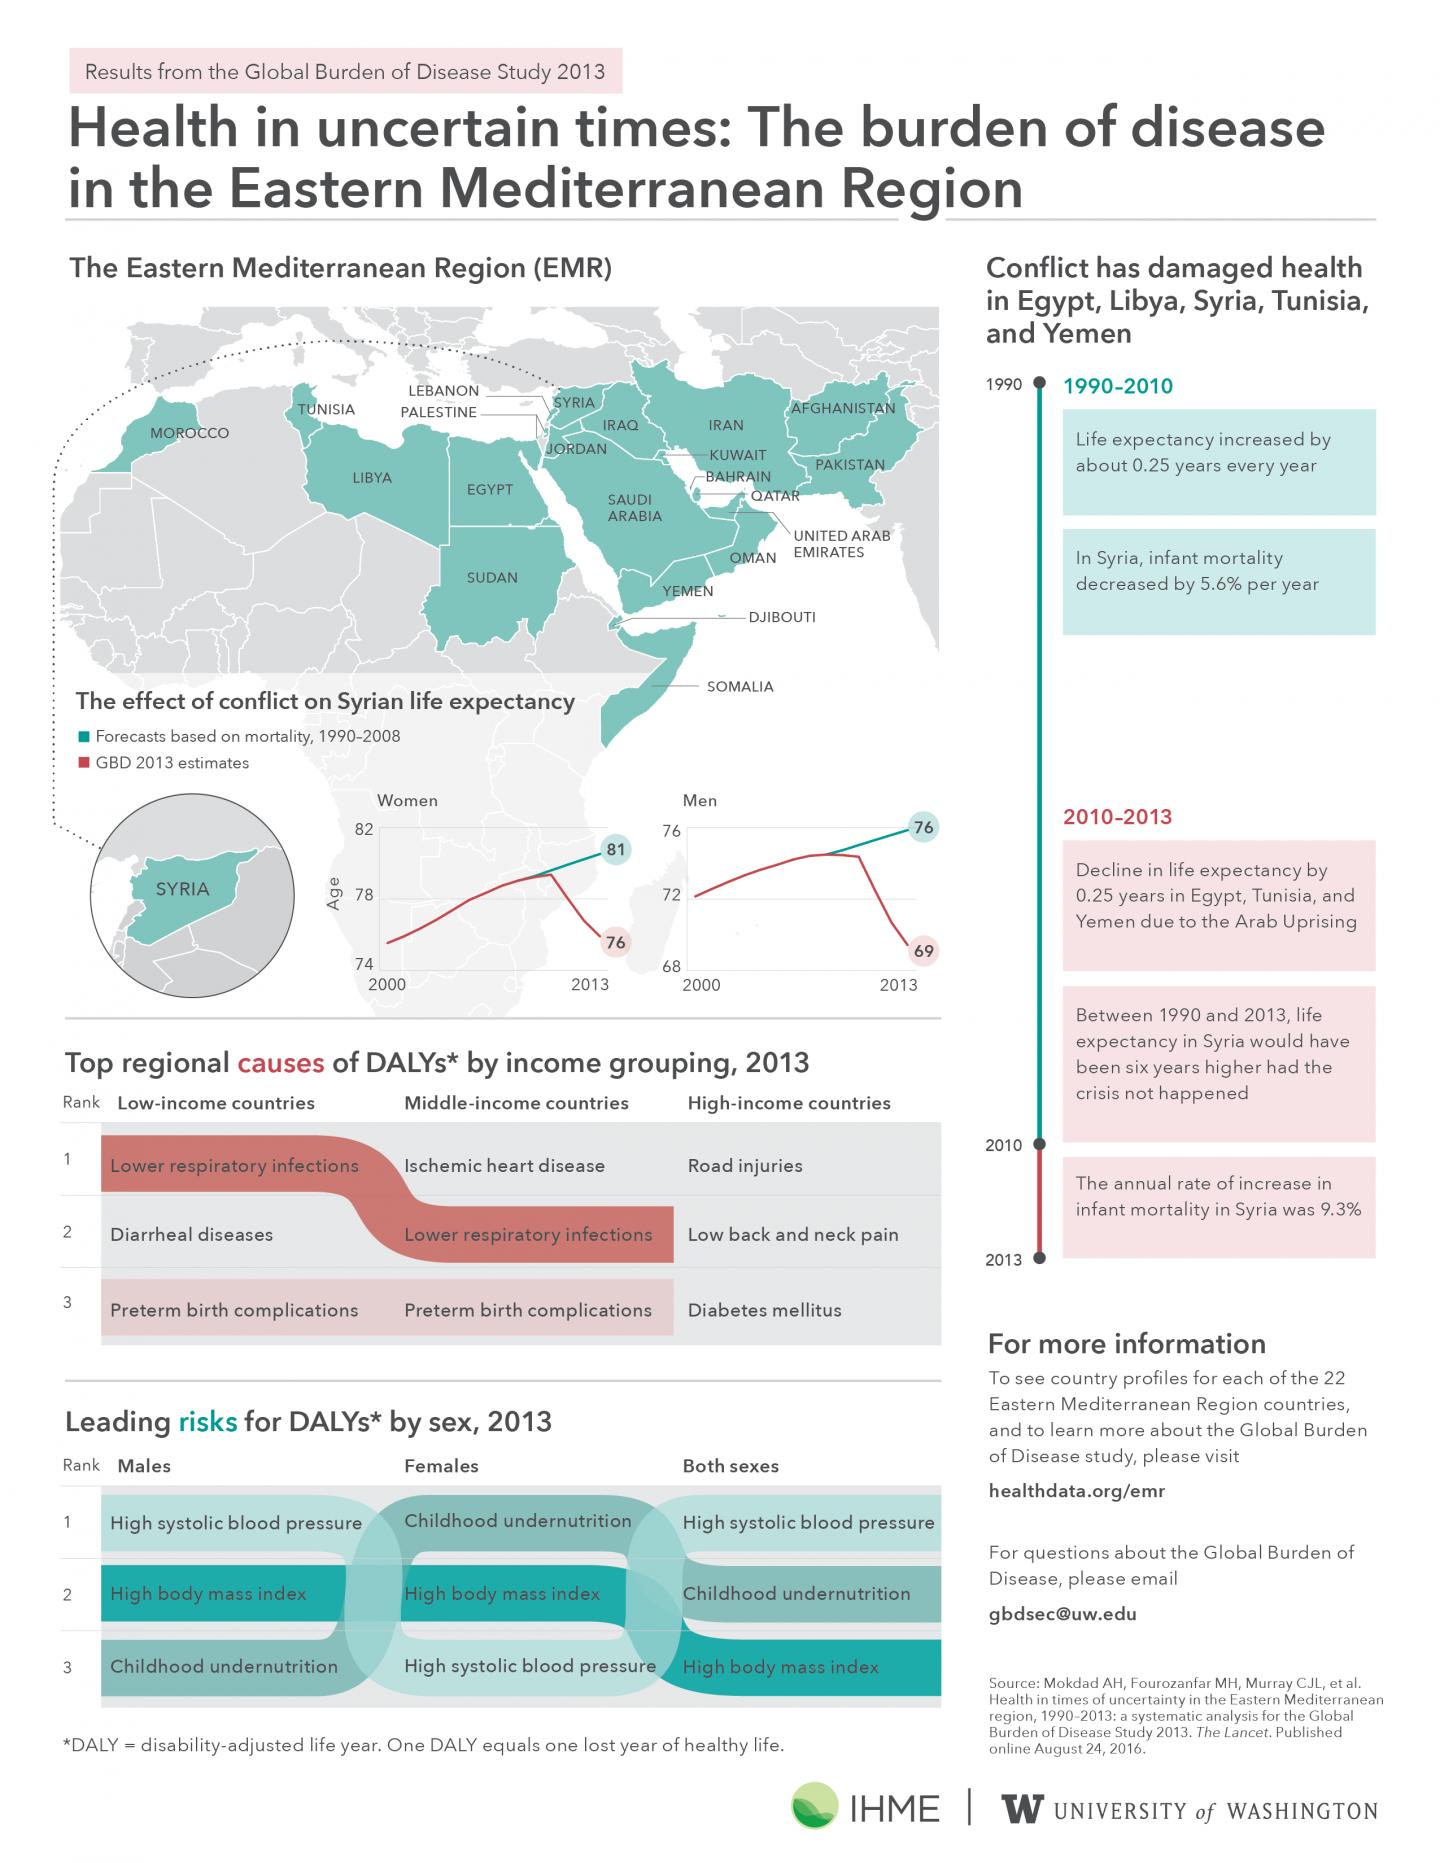 Health in Uncertain Times: Eastern Mediterranean Region Infographic